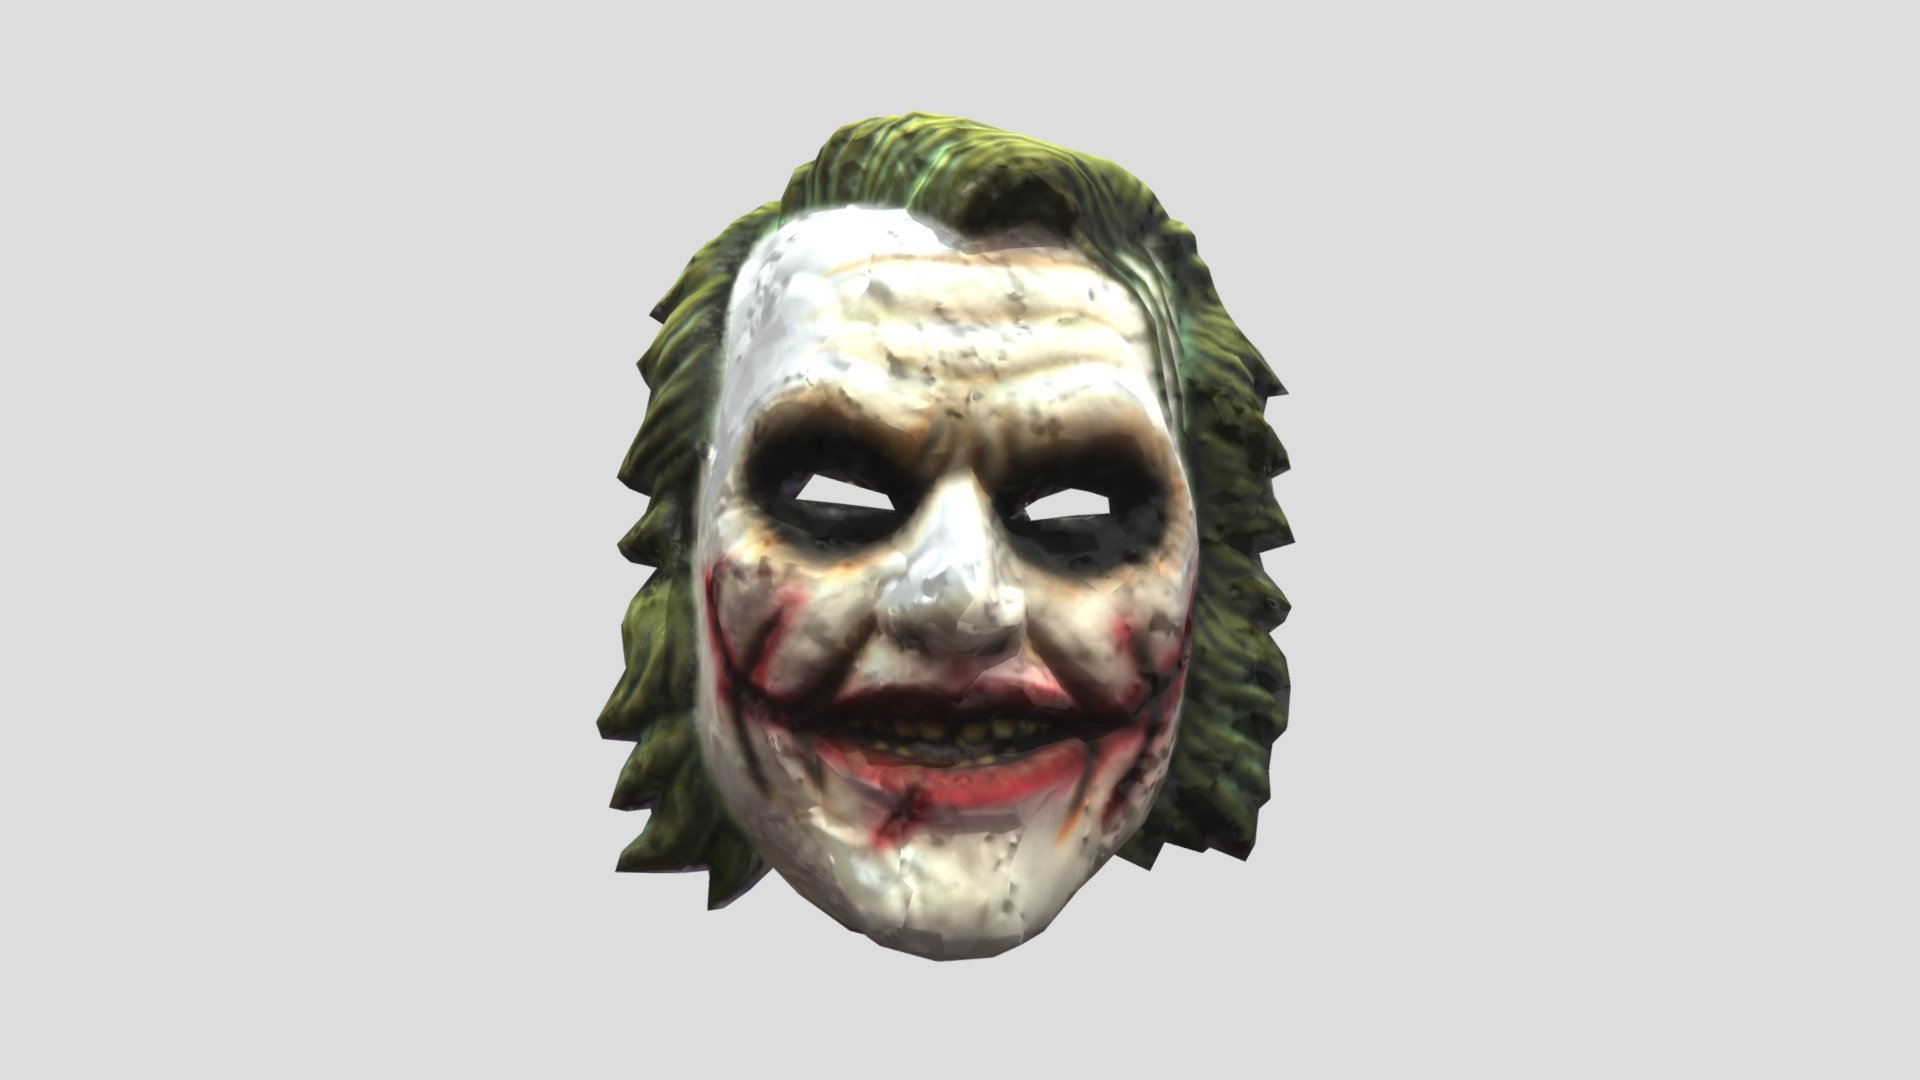 joker-mask-download-free-3d-model-by-david-wigforss-dwigfor